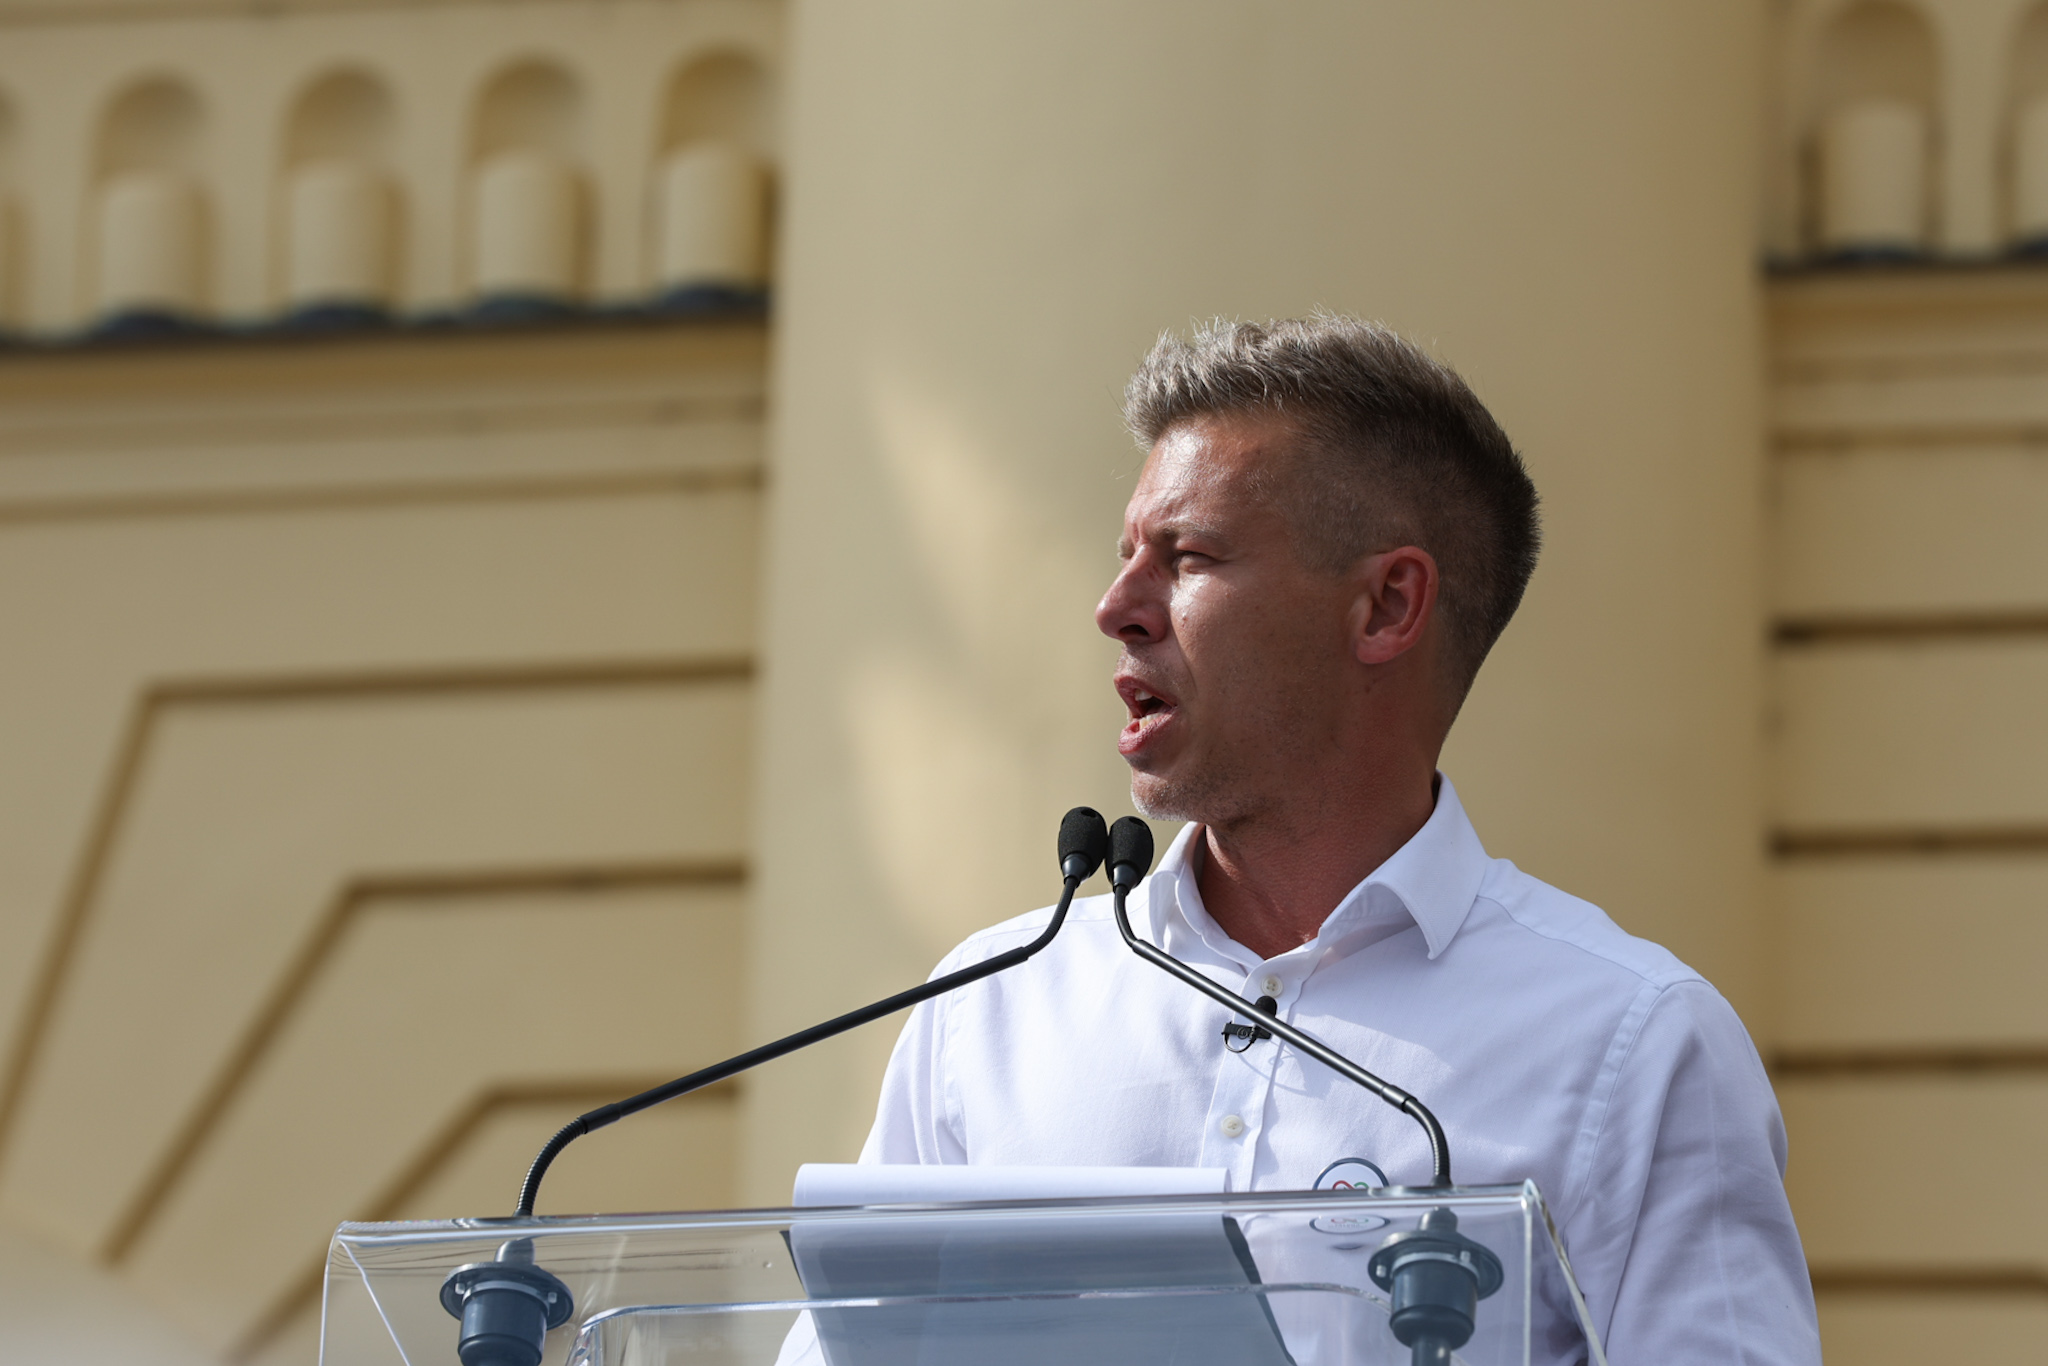 Magyar Péter beszélt a polgármester-jelöltjével, aki korábban nárcisztikus idiótának nevezte őt: „Konstatálta, hogy mégsem az vagyok, amit a rogáni propaganda rólam elterjesztett”